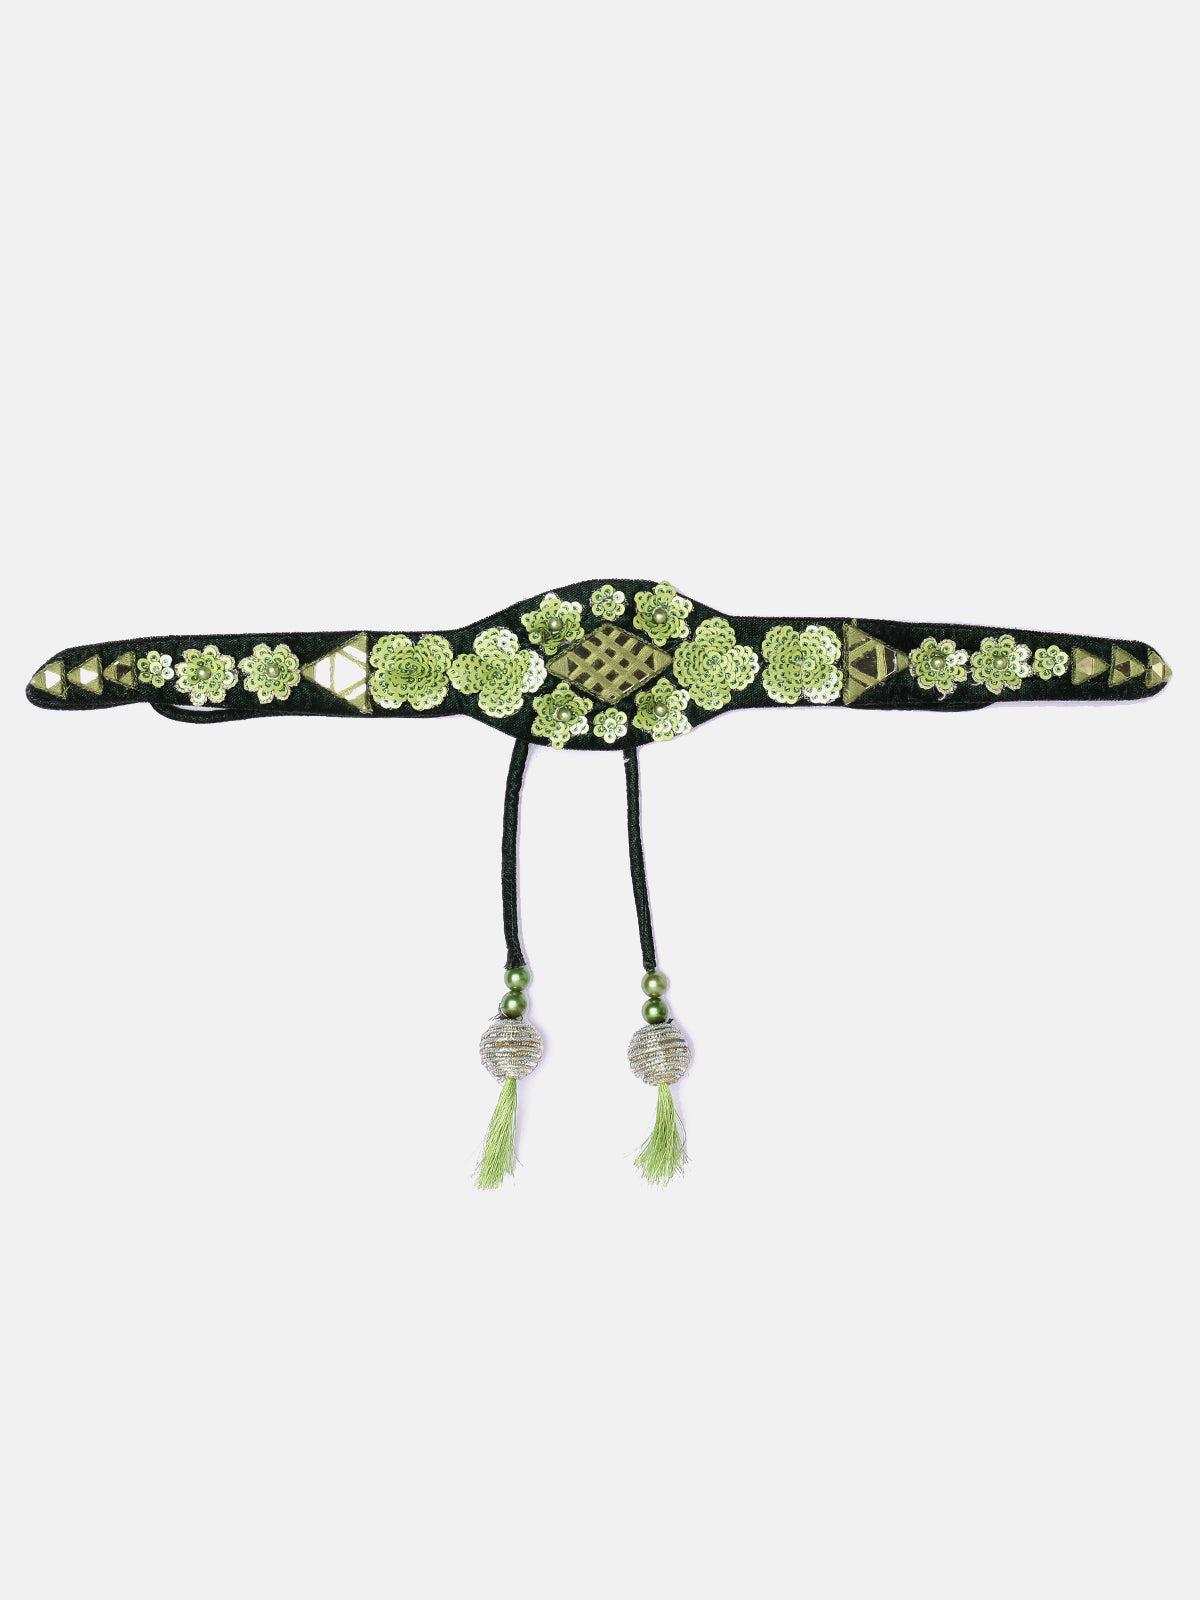 Green Hand Made Mirror, Sequin Work Ethnic Waist Belt With Tassels